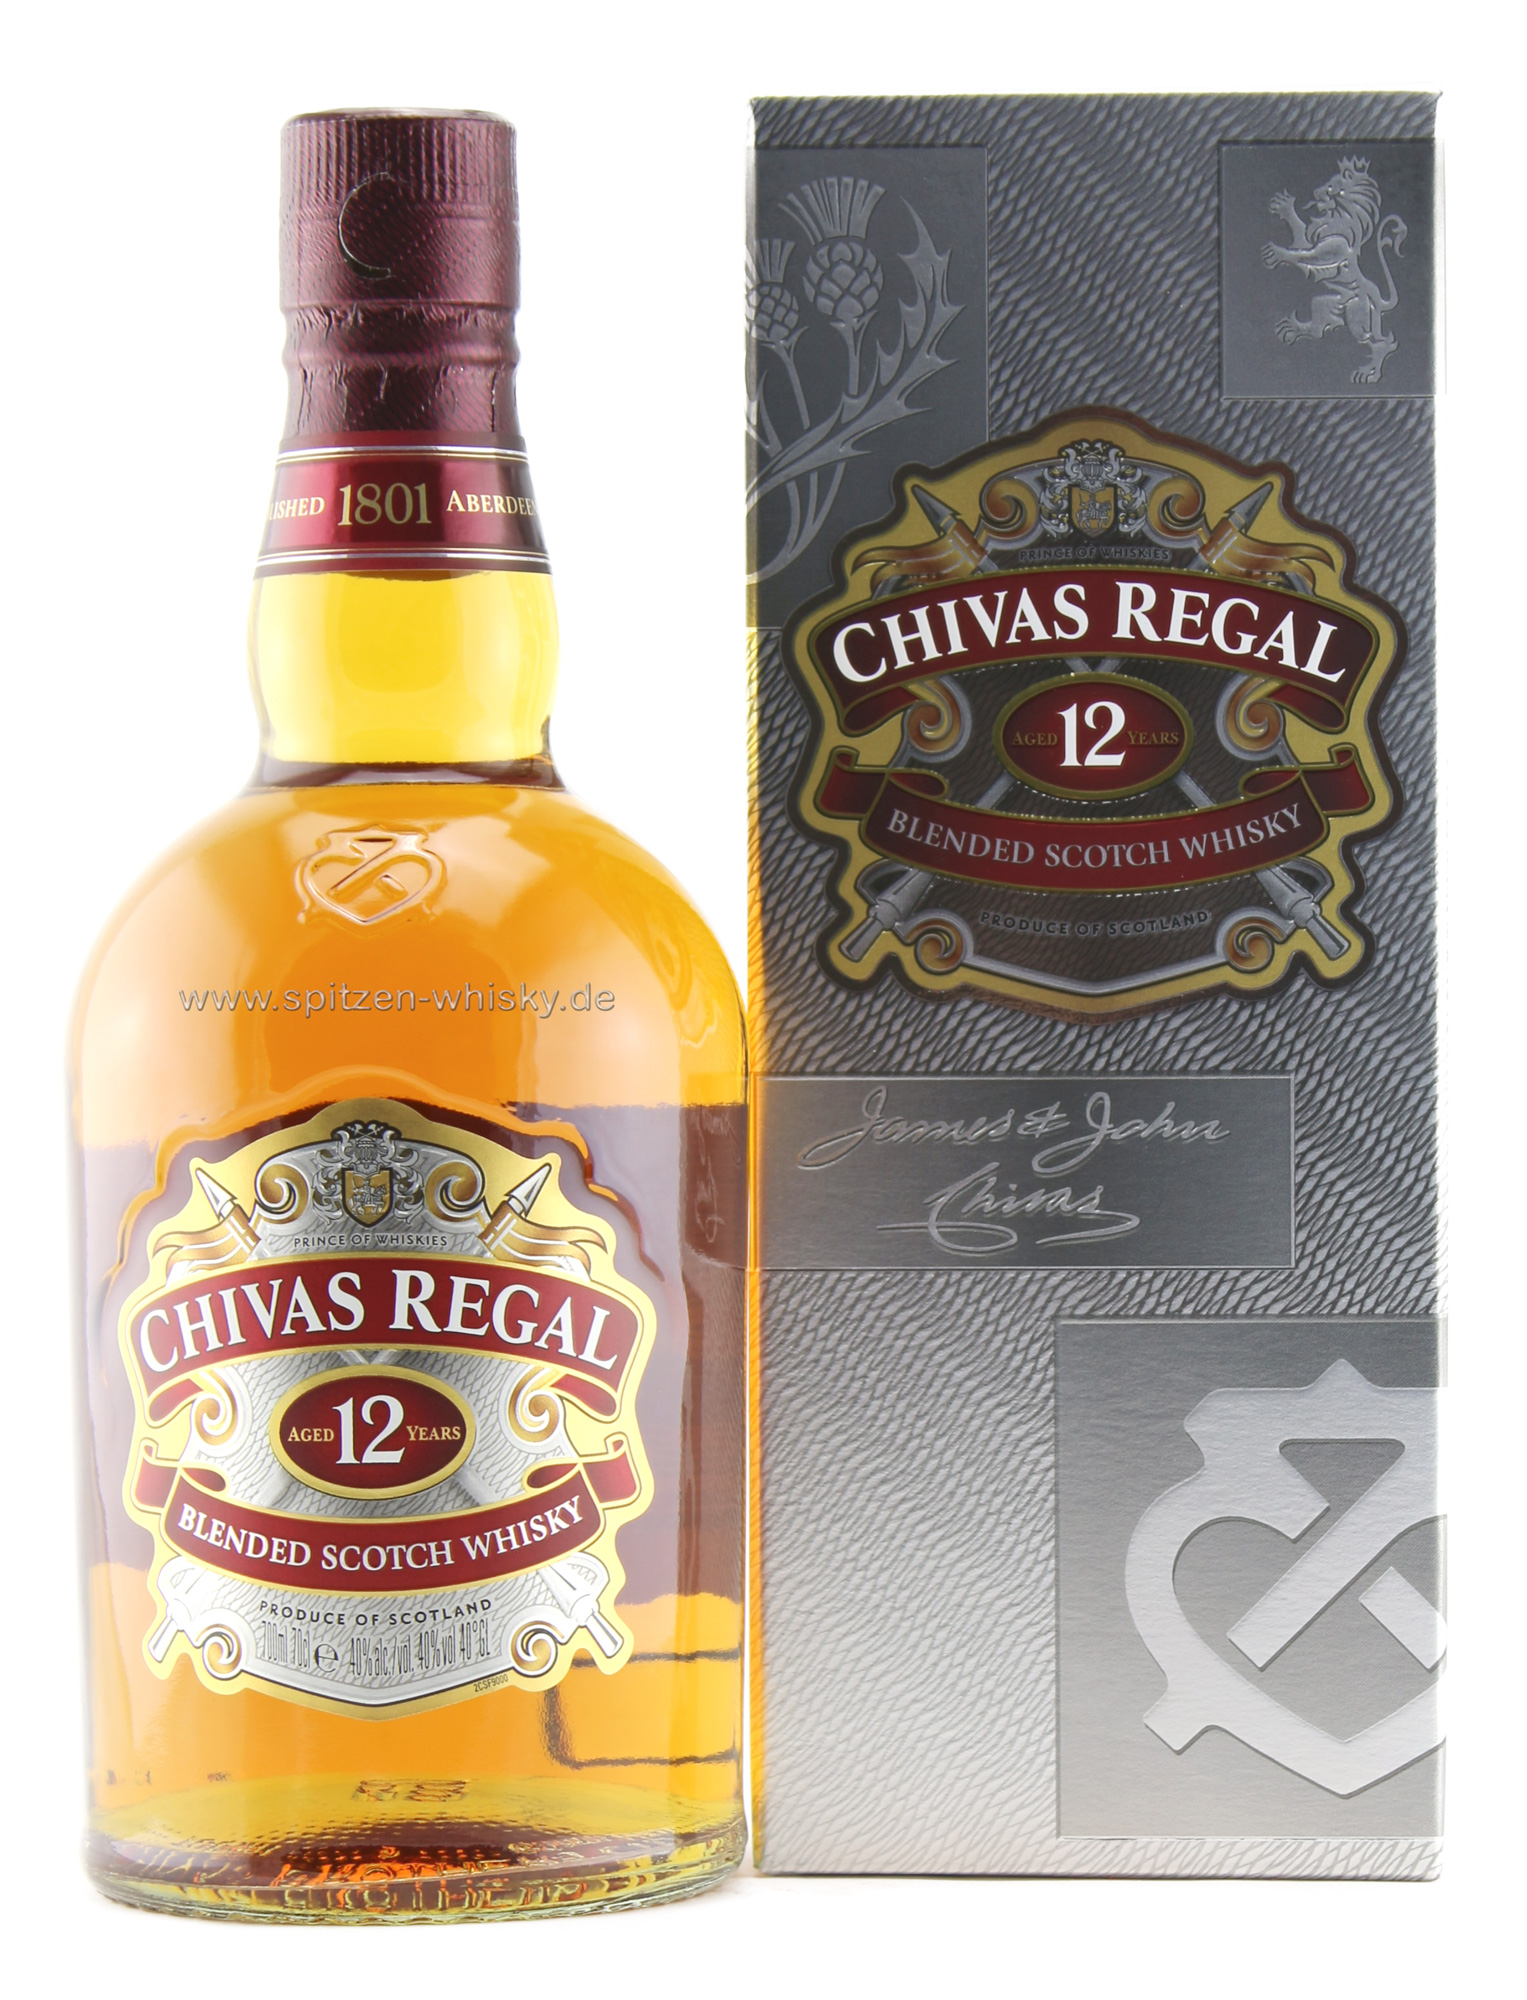 Chivas Regal 12 Jahre 40% 0,7l | Chivas Regal | Blended